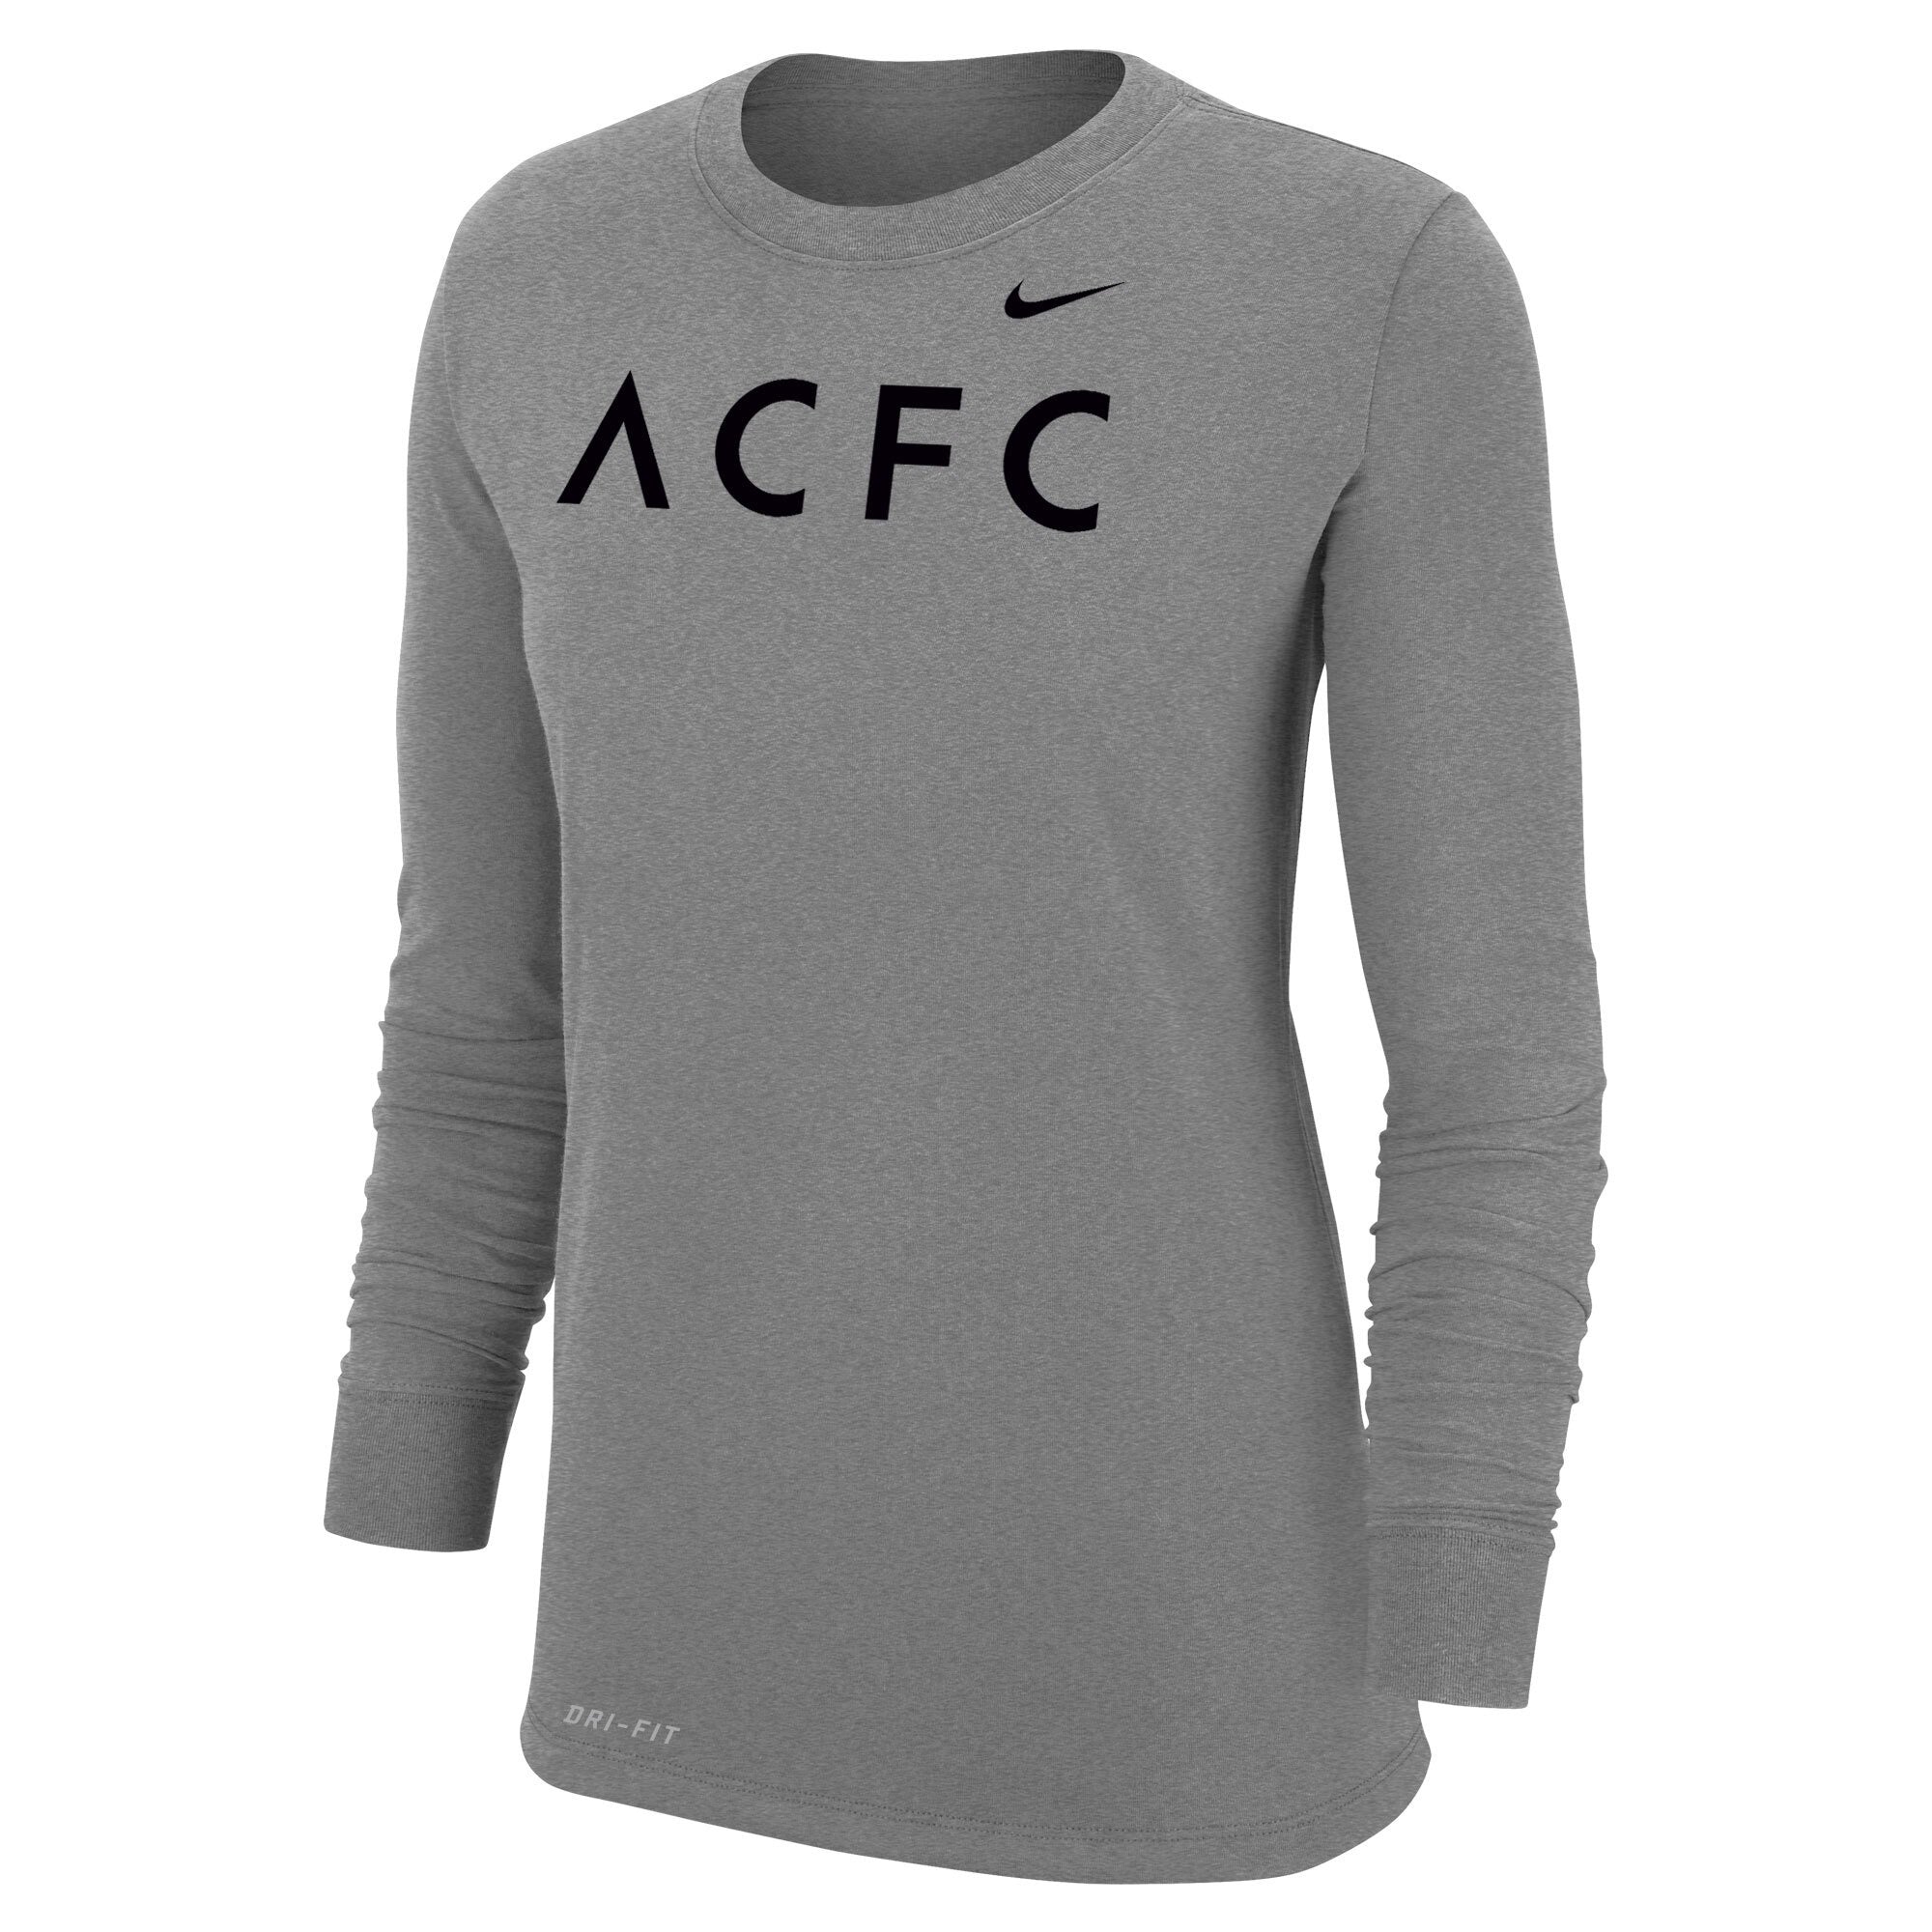 ACFC Nike Women's Grey Dri-FIT Long Sleeve T-Shirt